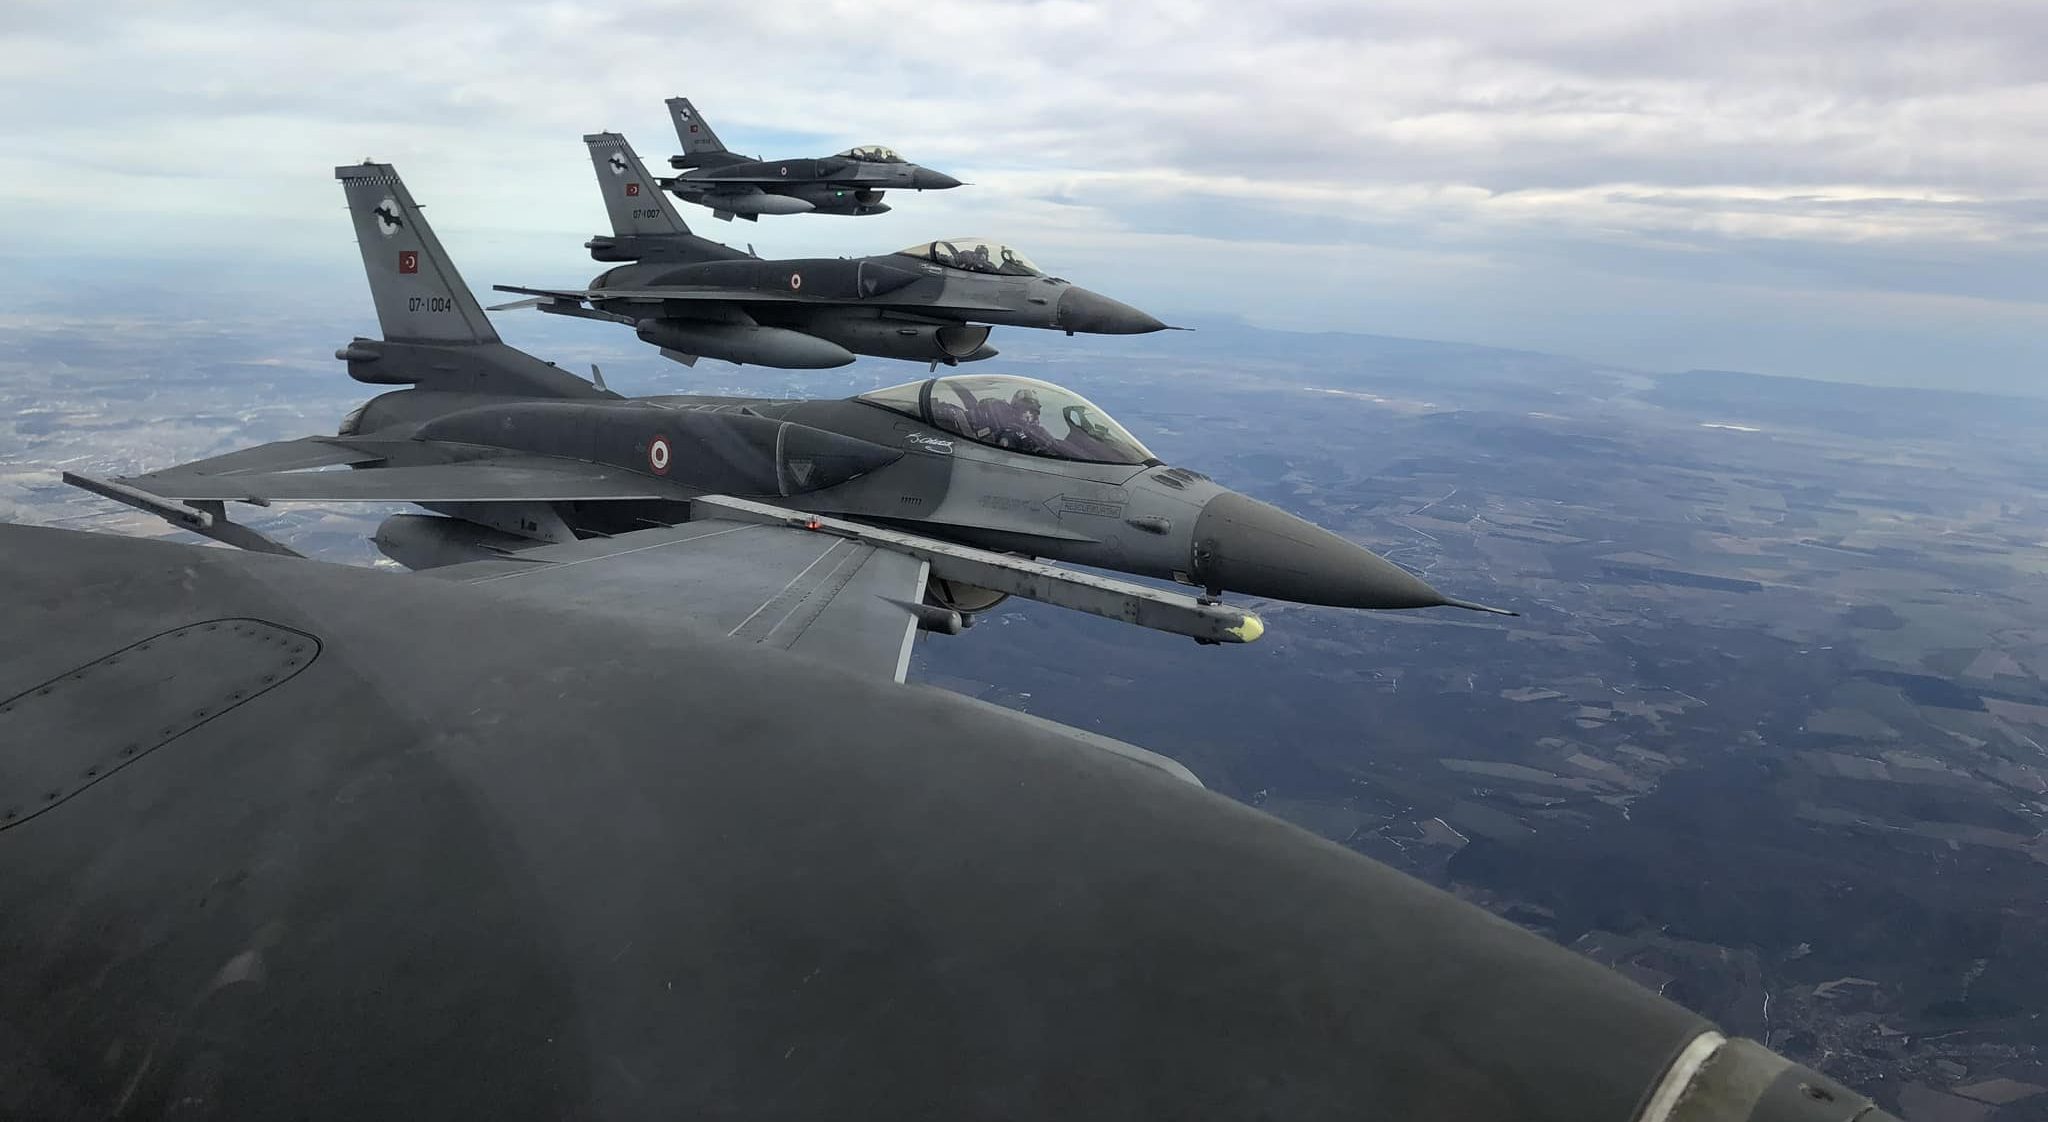 Τι κρύβεται πίσω από τον μακρύ τουρκικό κατάλογο παραγγελίας οπλικών συστημάτων για τα αεροσκάφη F-16; – Του Λ. ΚΑΜΠΟΥΡΙΔΗ